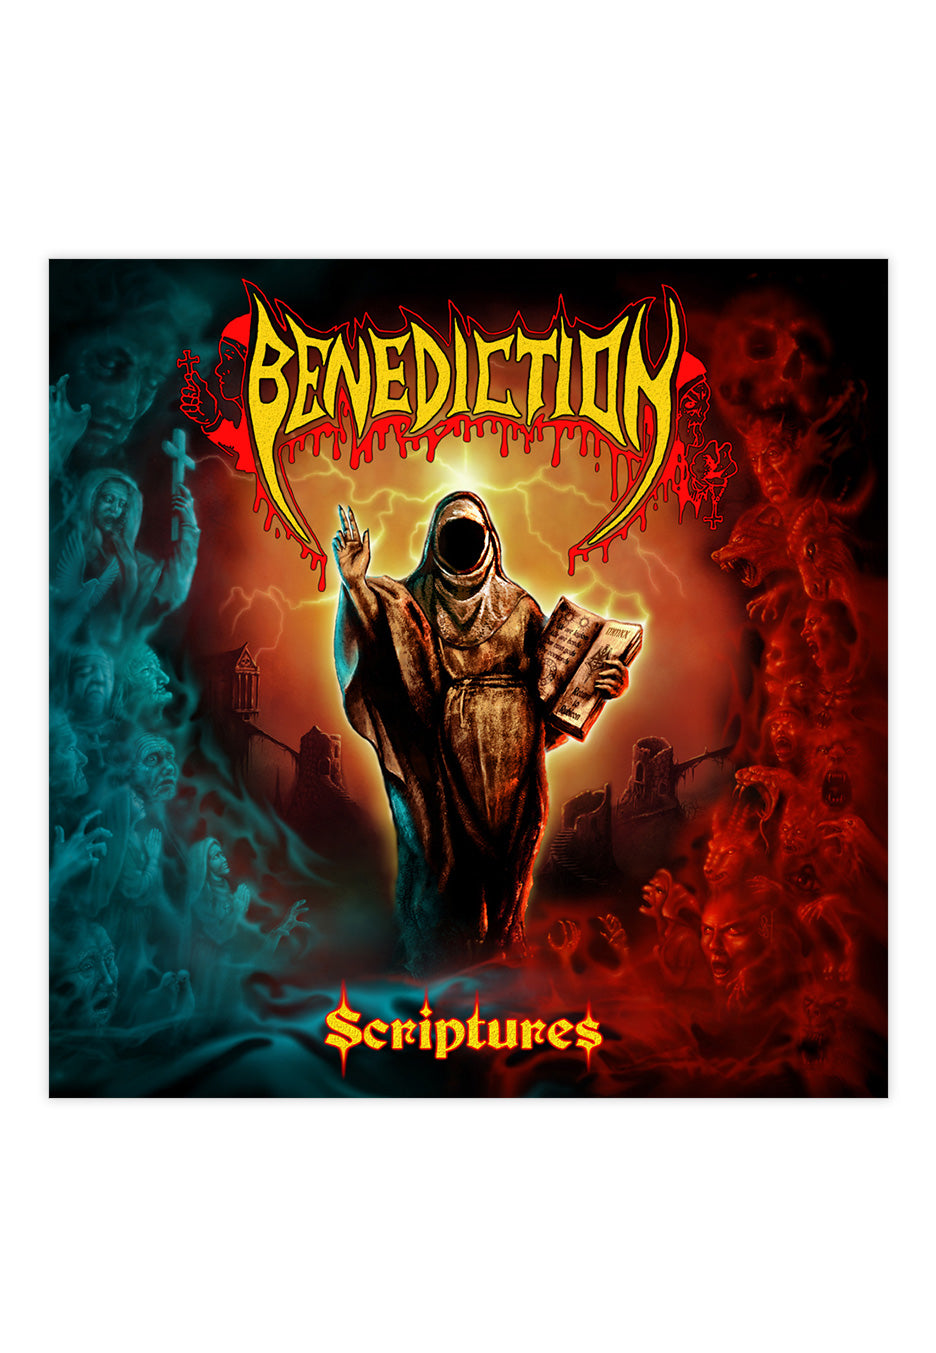 Benediction - Scriptures - CD